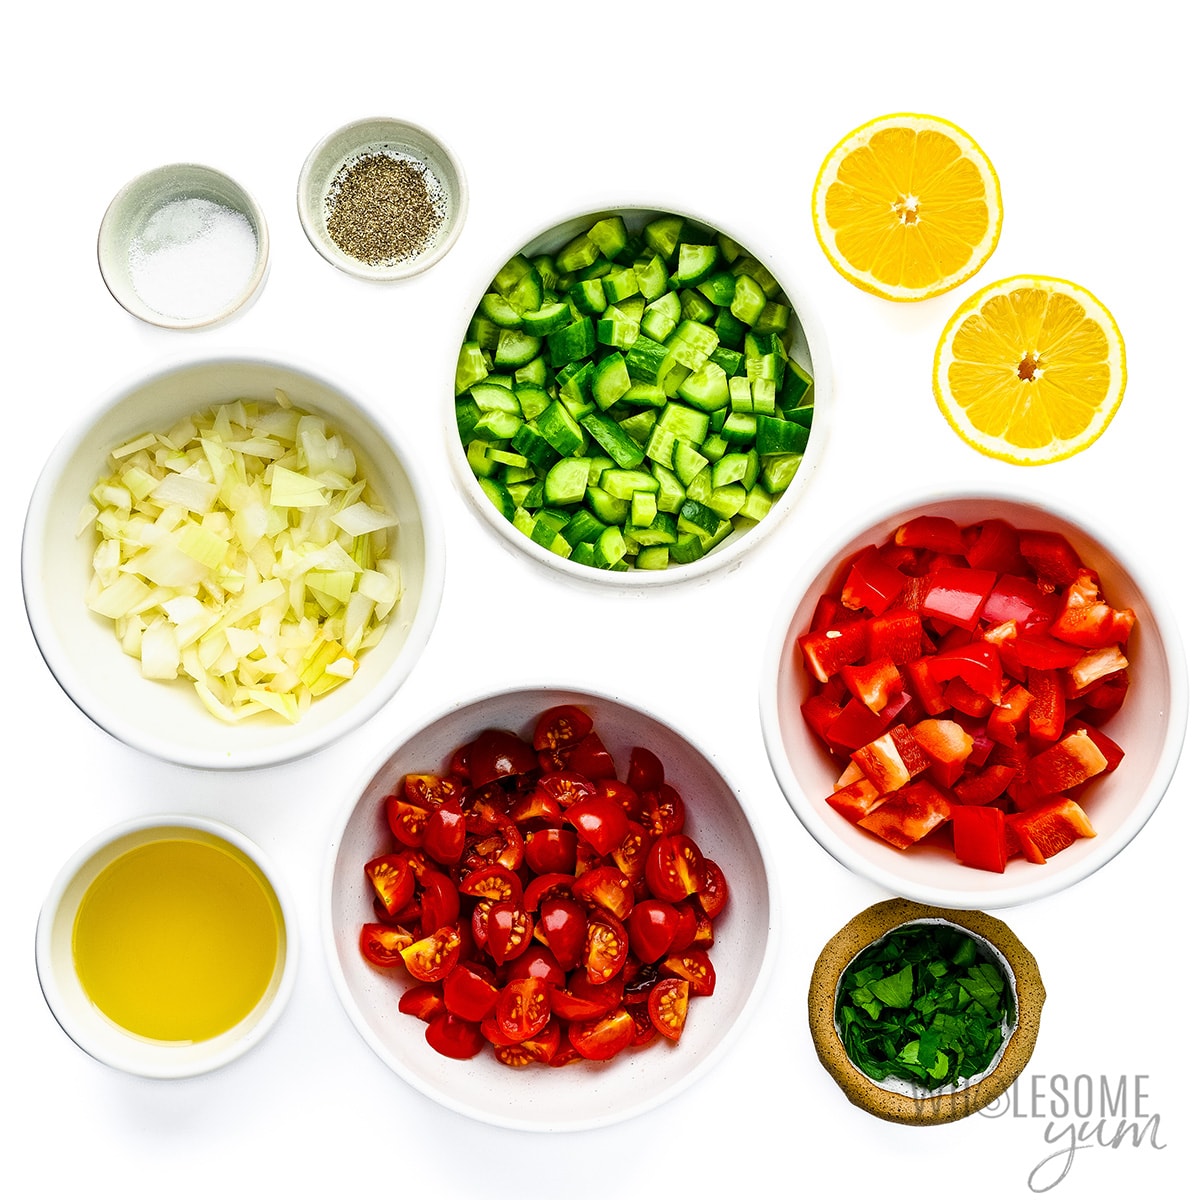 Israeli salad recipe ingredients measured in bowls.